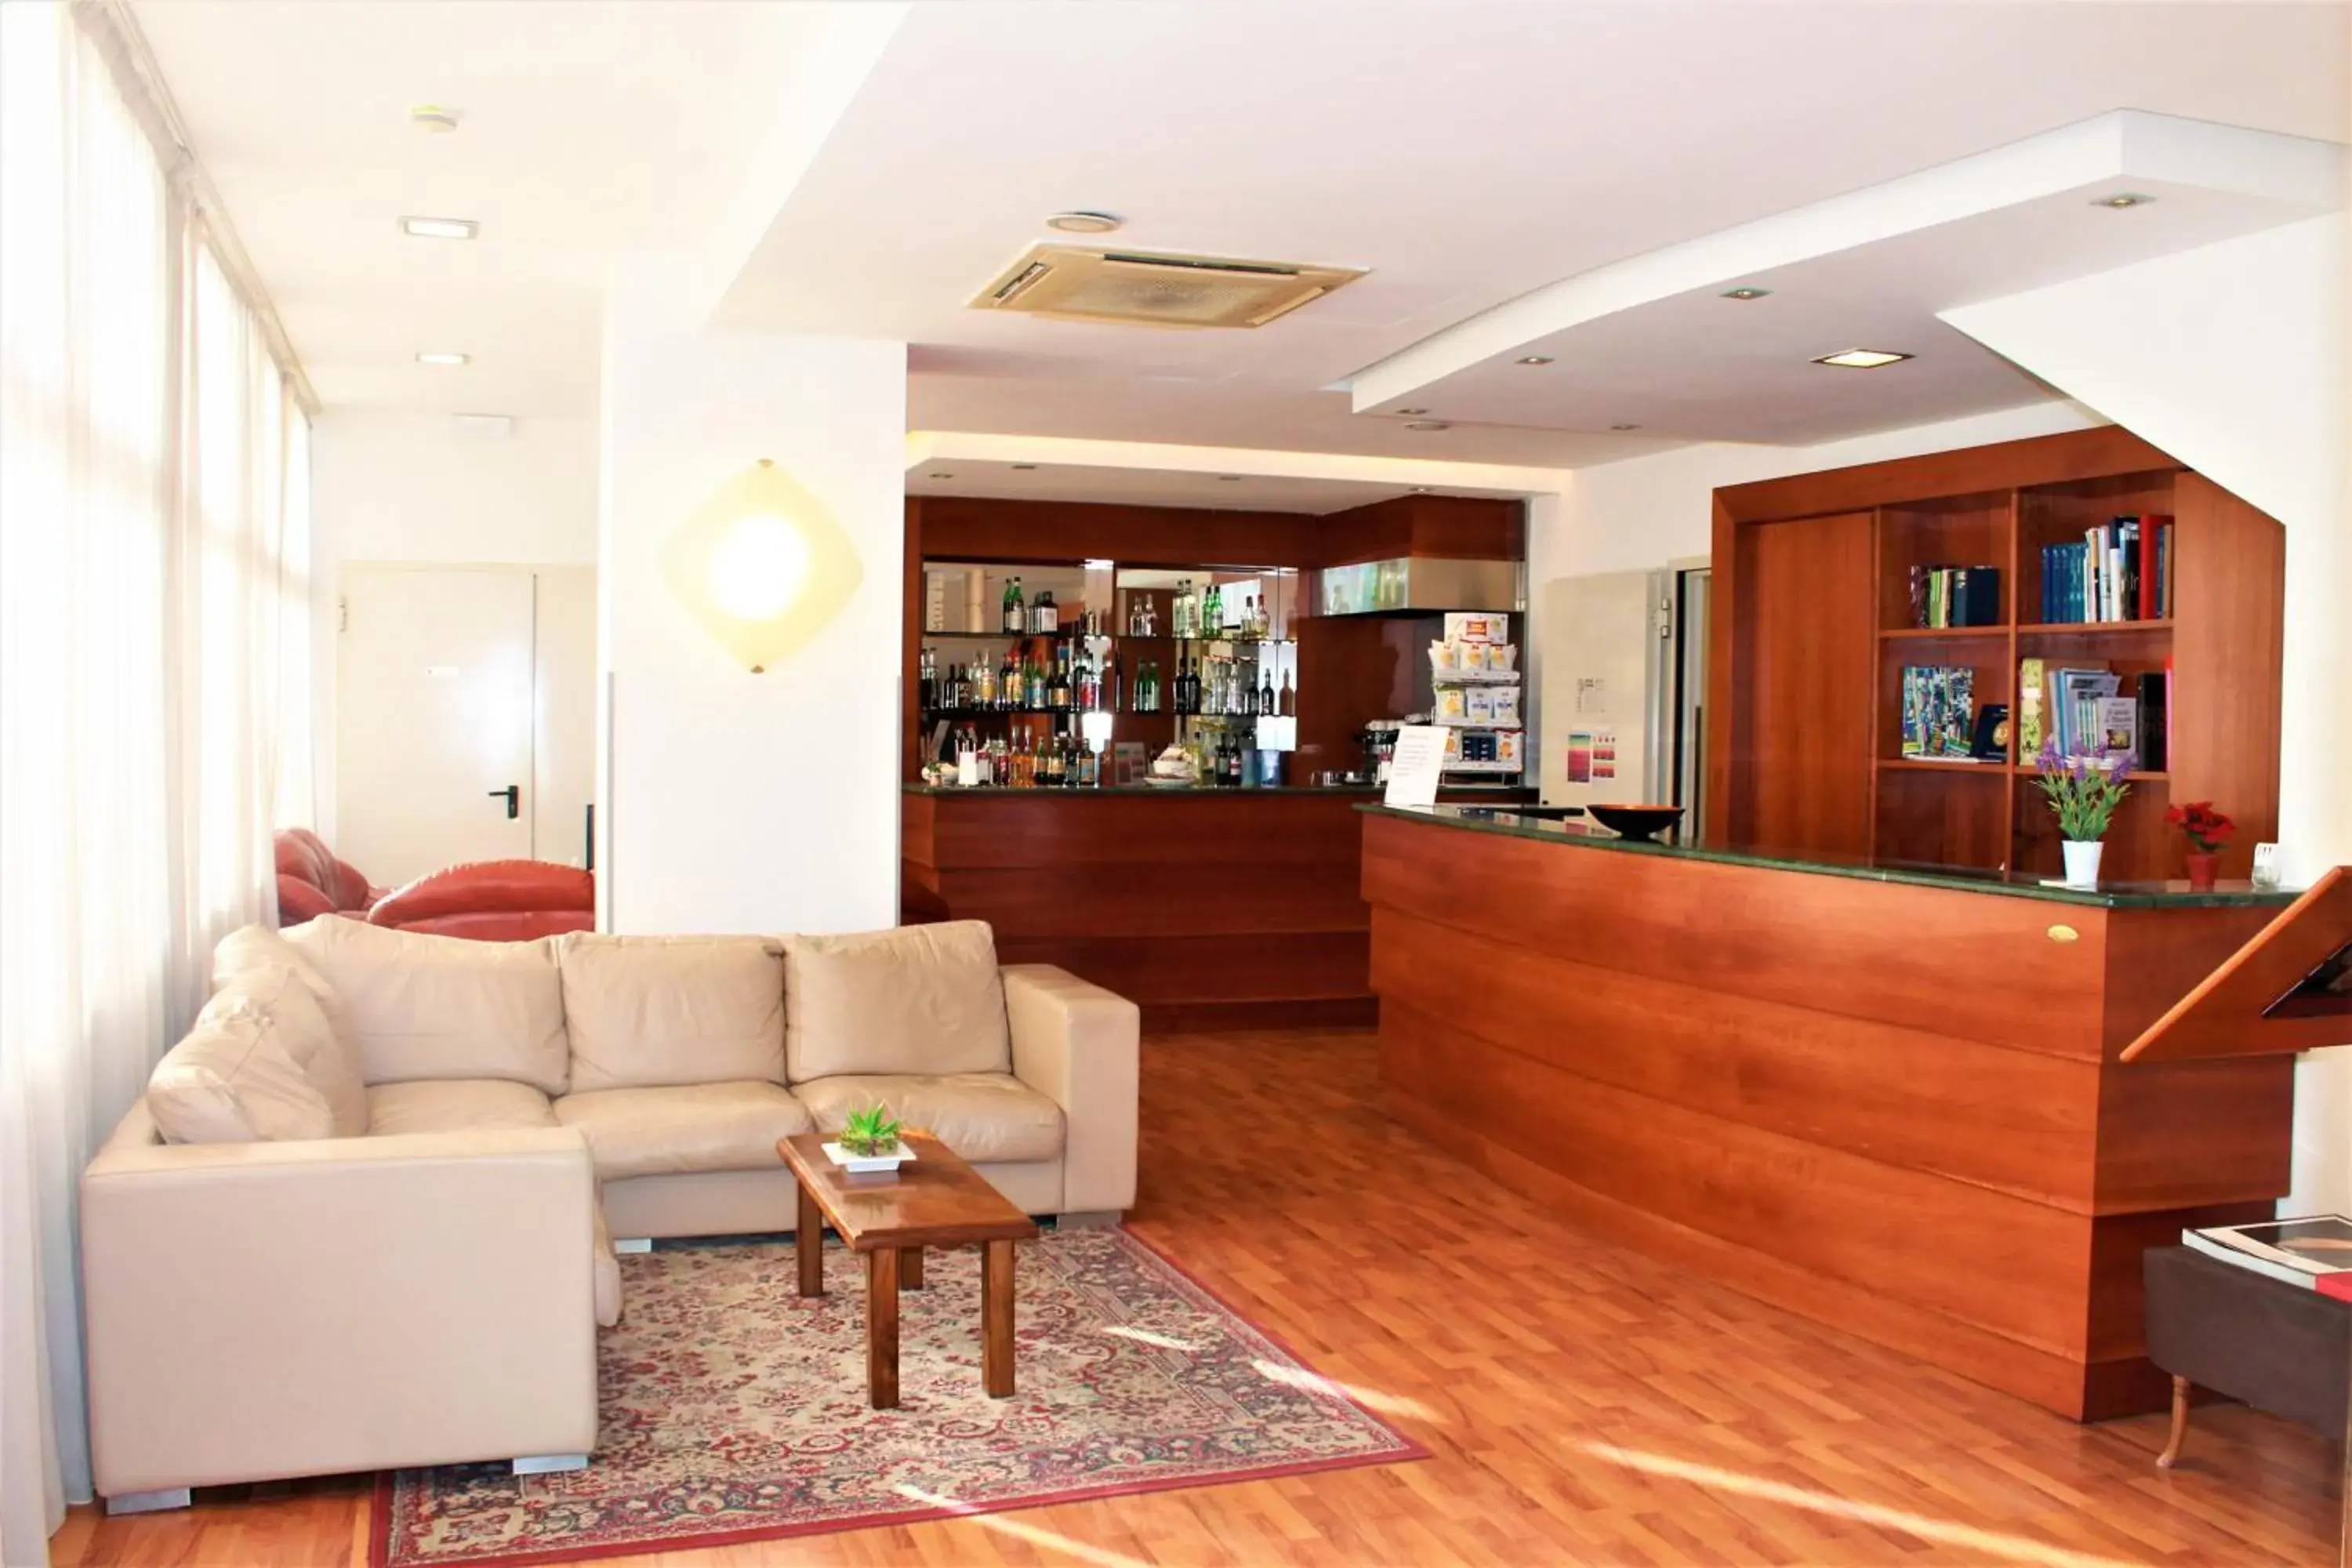 Lobby or reception in Hotel Santa Lucia